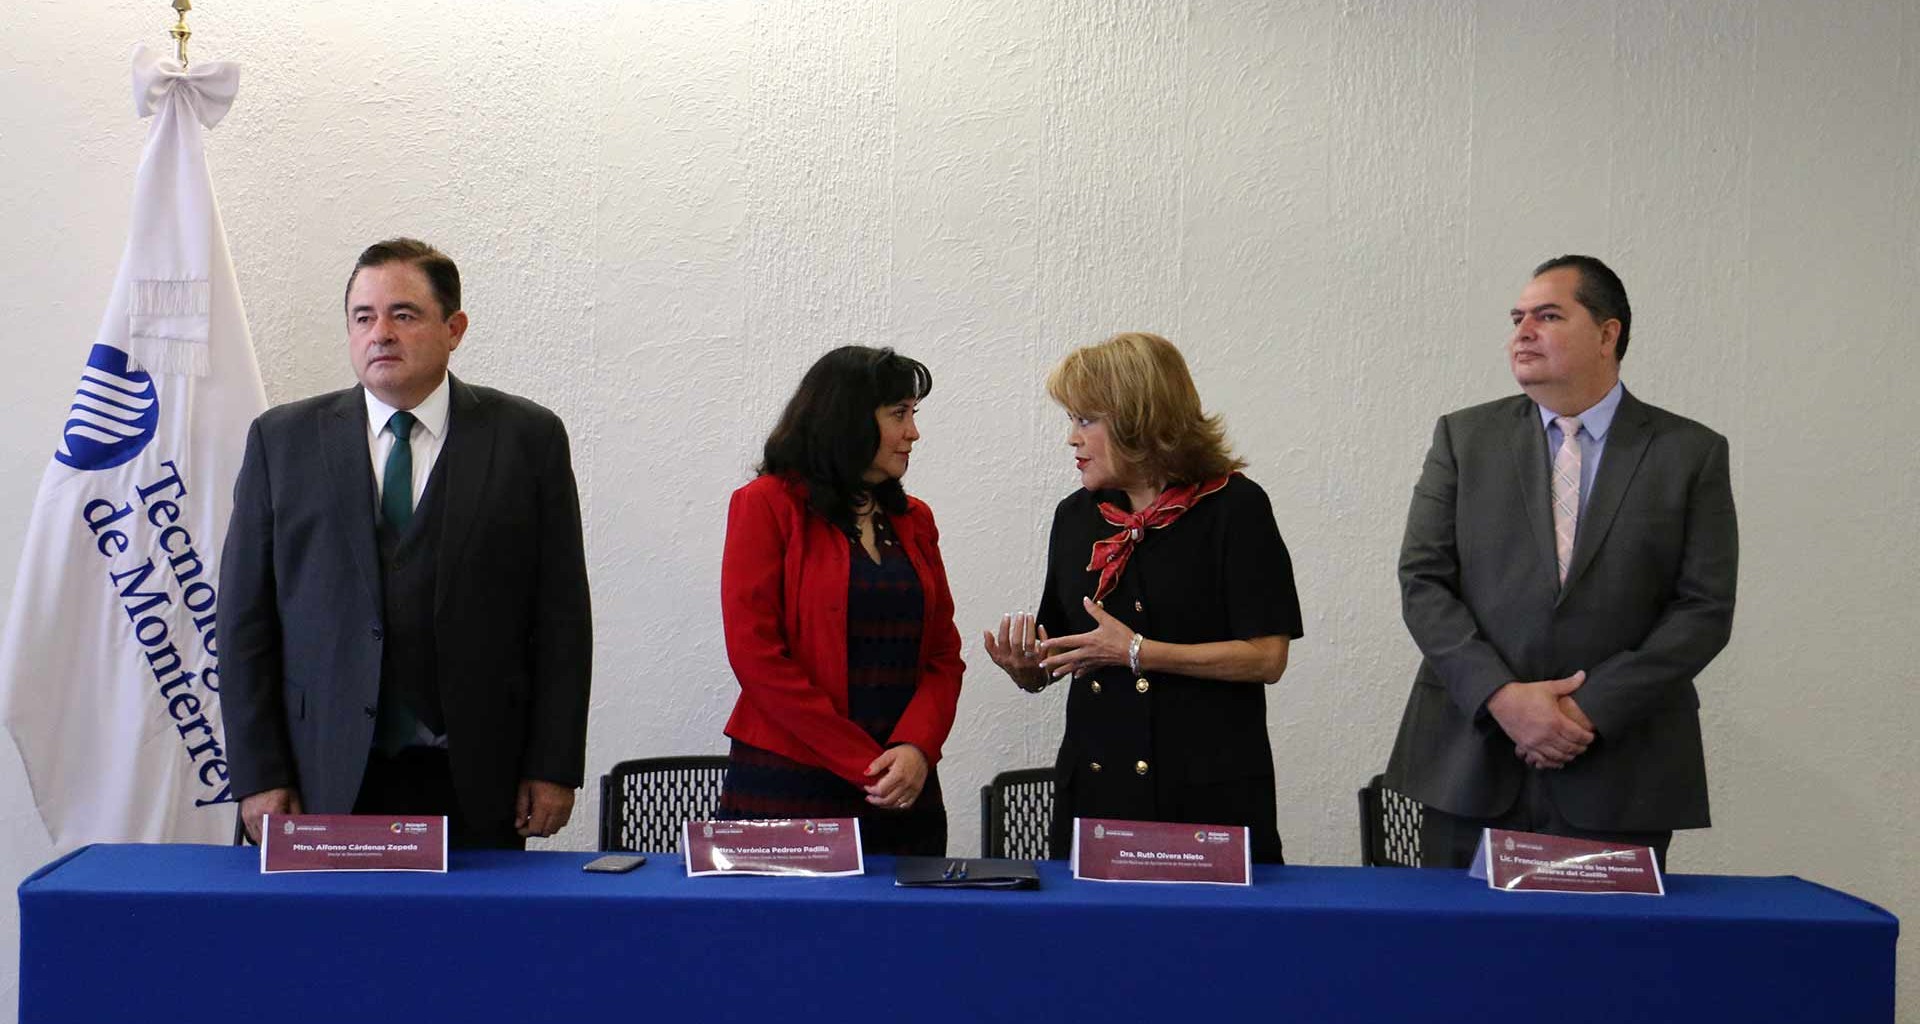 Convenio Tec de Monterrey con H. Ayuntamiento Atizapán de Zaragoza